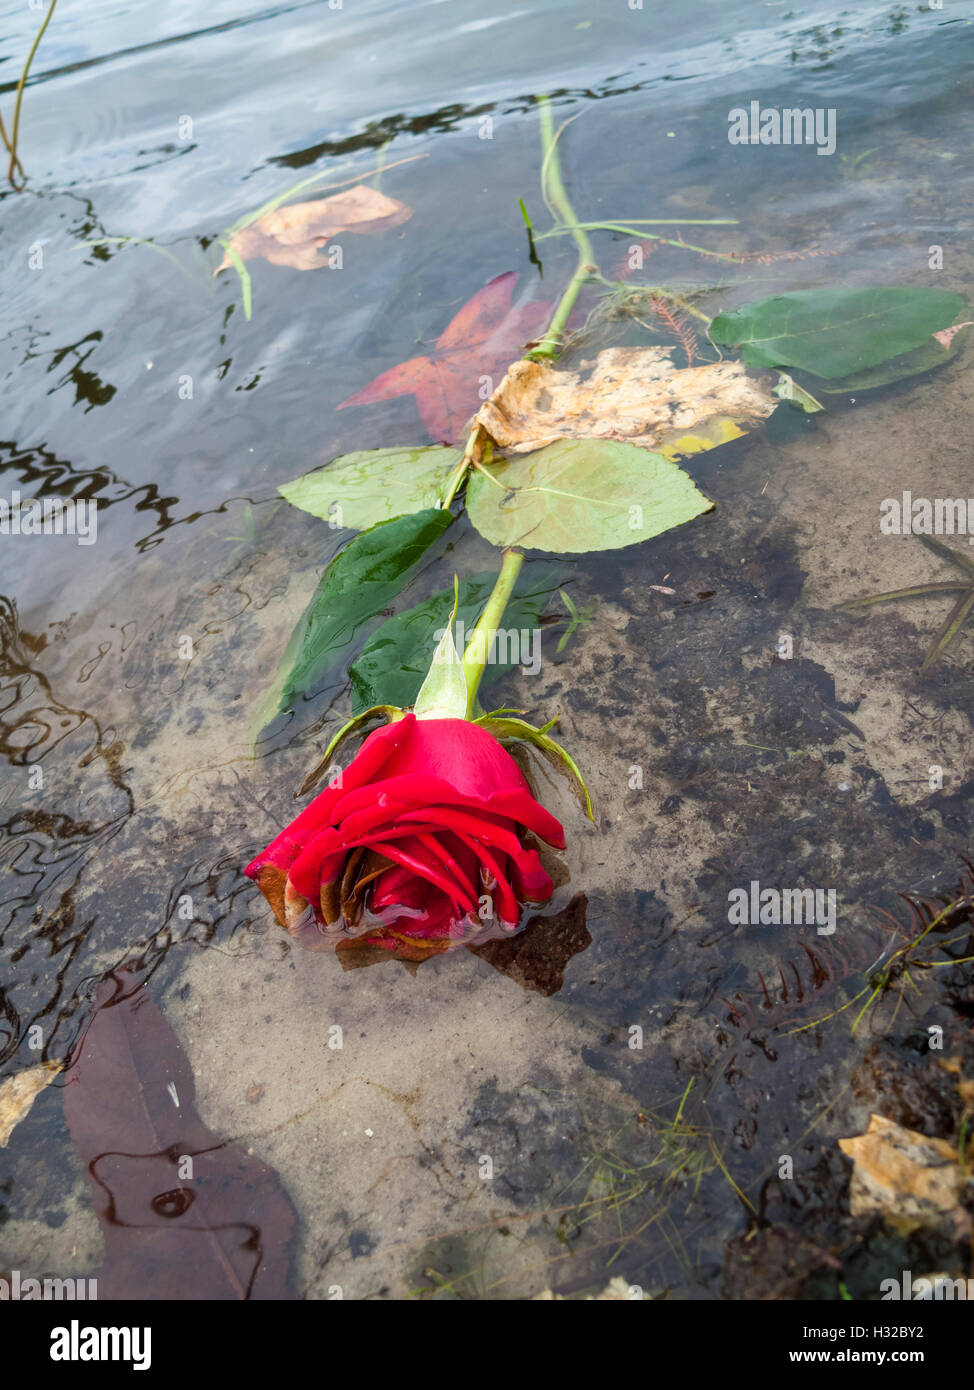 Photographie Concept pour cœur brisé n'a pas de relation romantique dead roses rouges flottant dans un lac ou rivière Banque D'Images